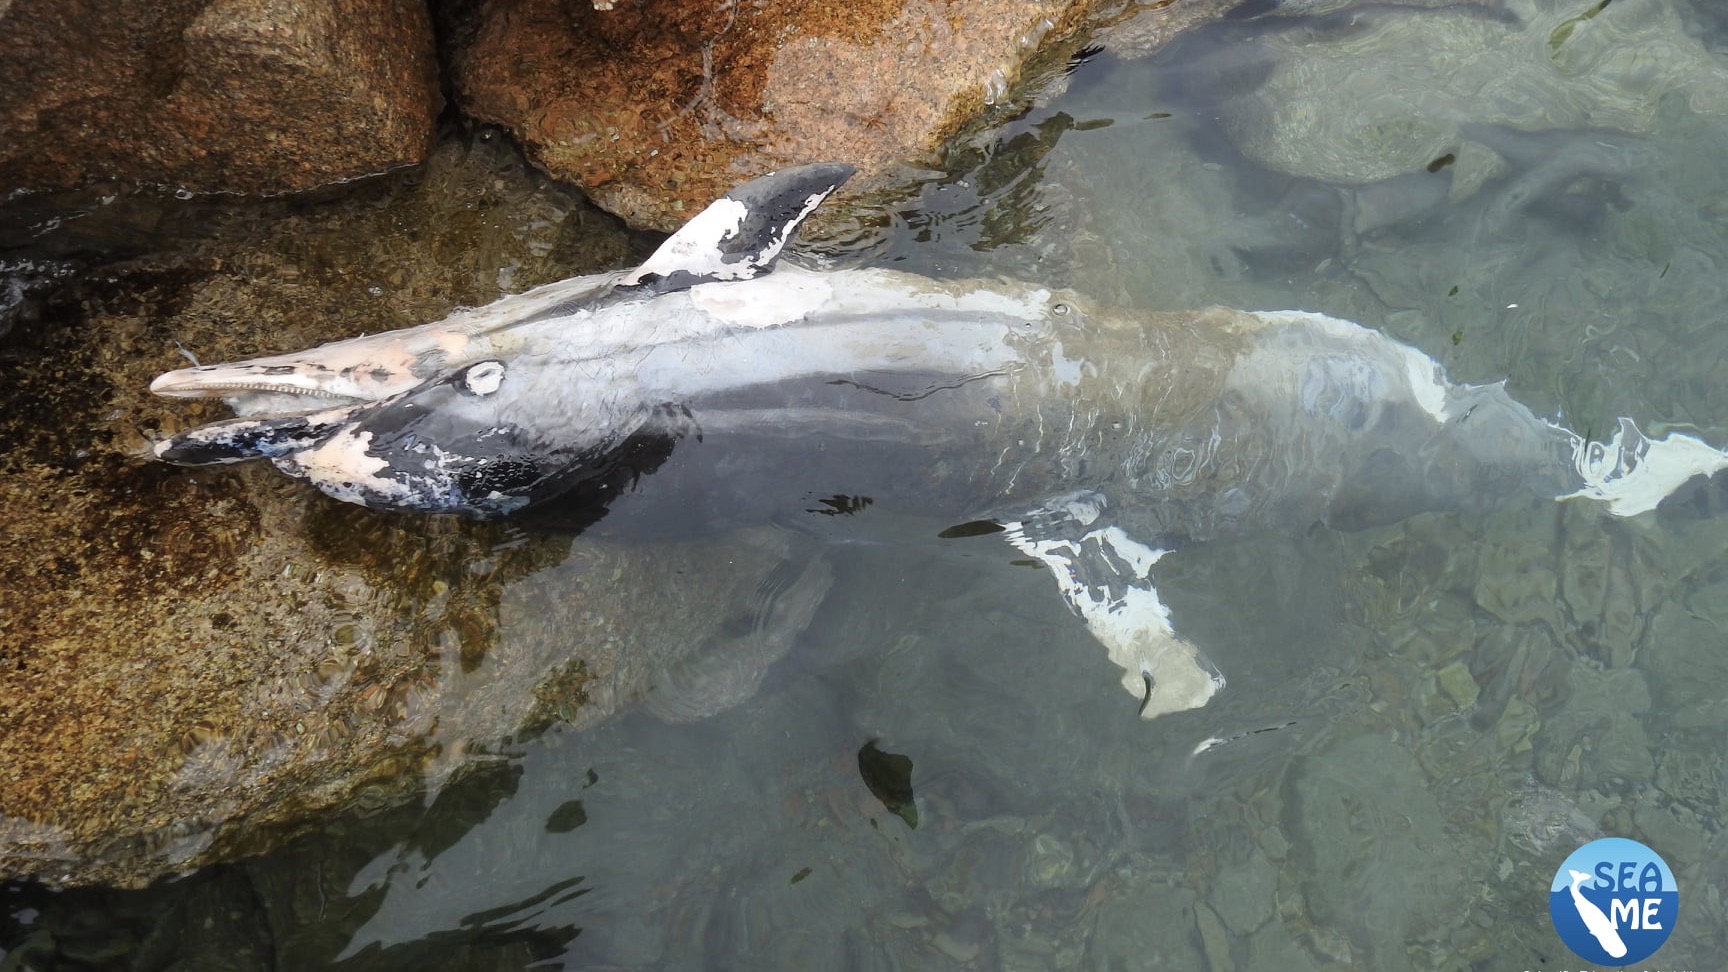 SeaMe Sardinia e la tutela dei cetacei: mari sempre più inquinati